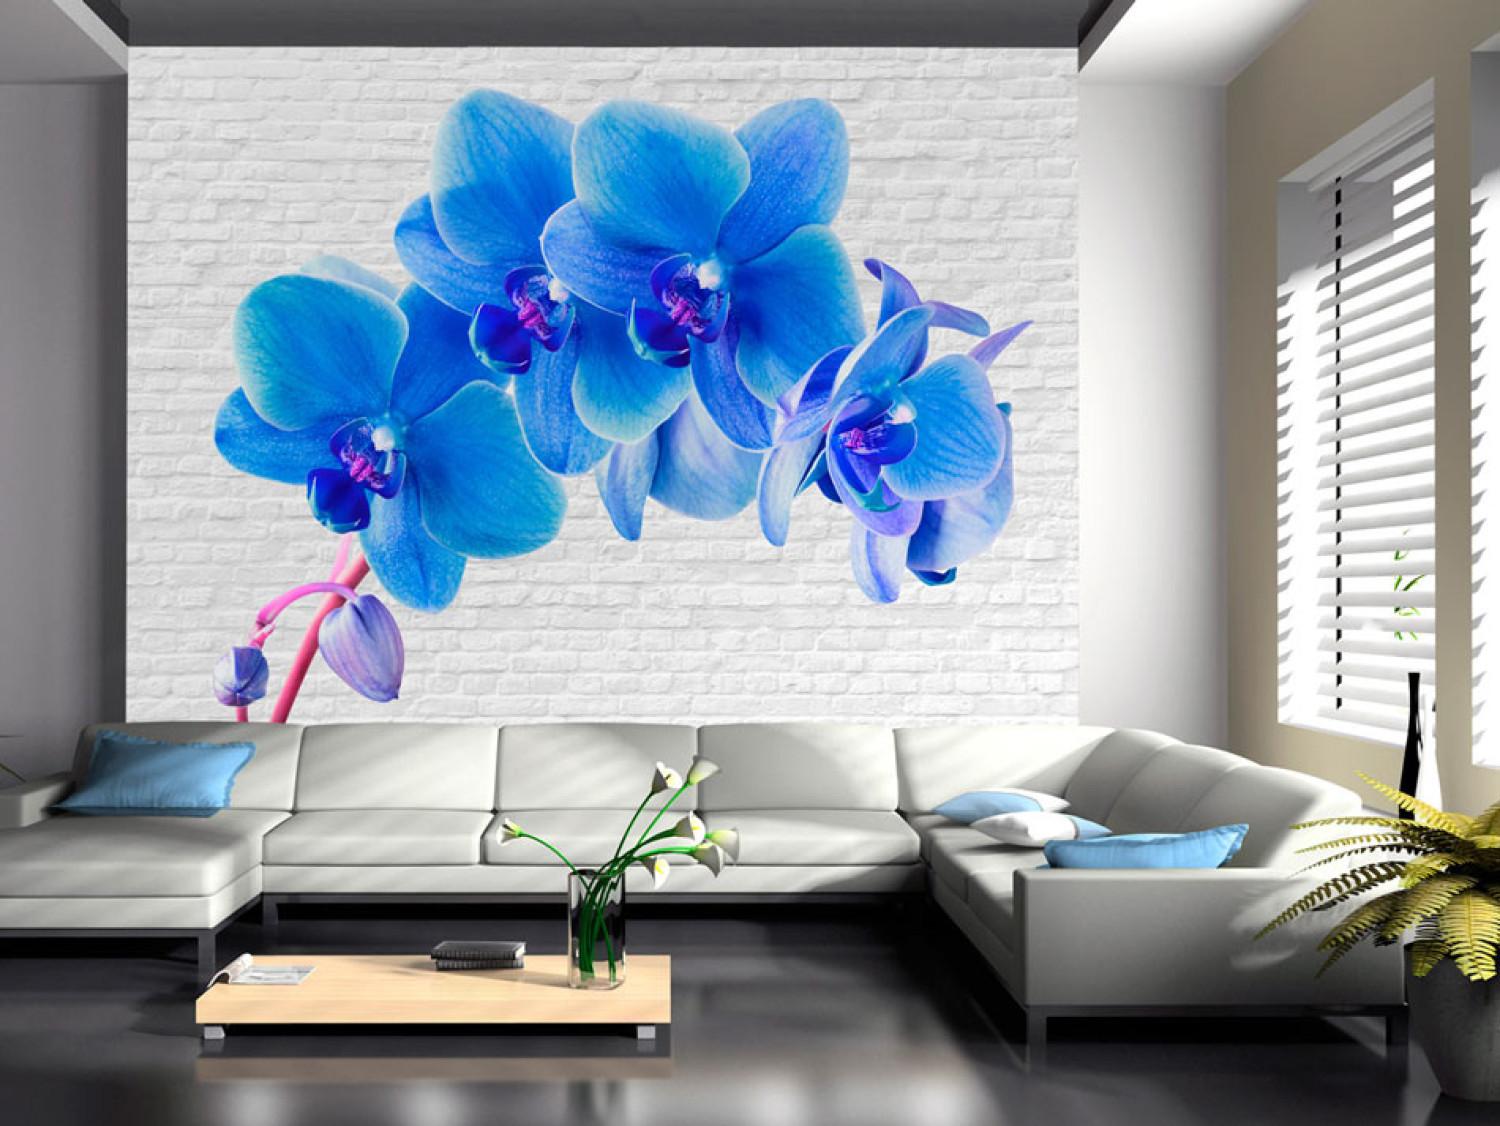 Fotomural decorativo Estímulo azul - orquídeas energéticas en fondo blanco de ladrillos